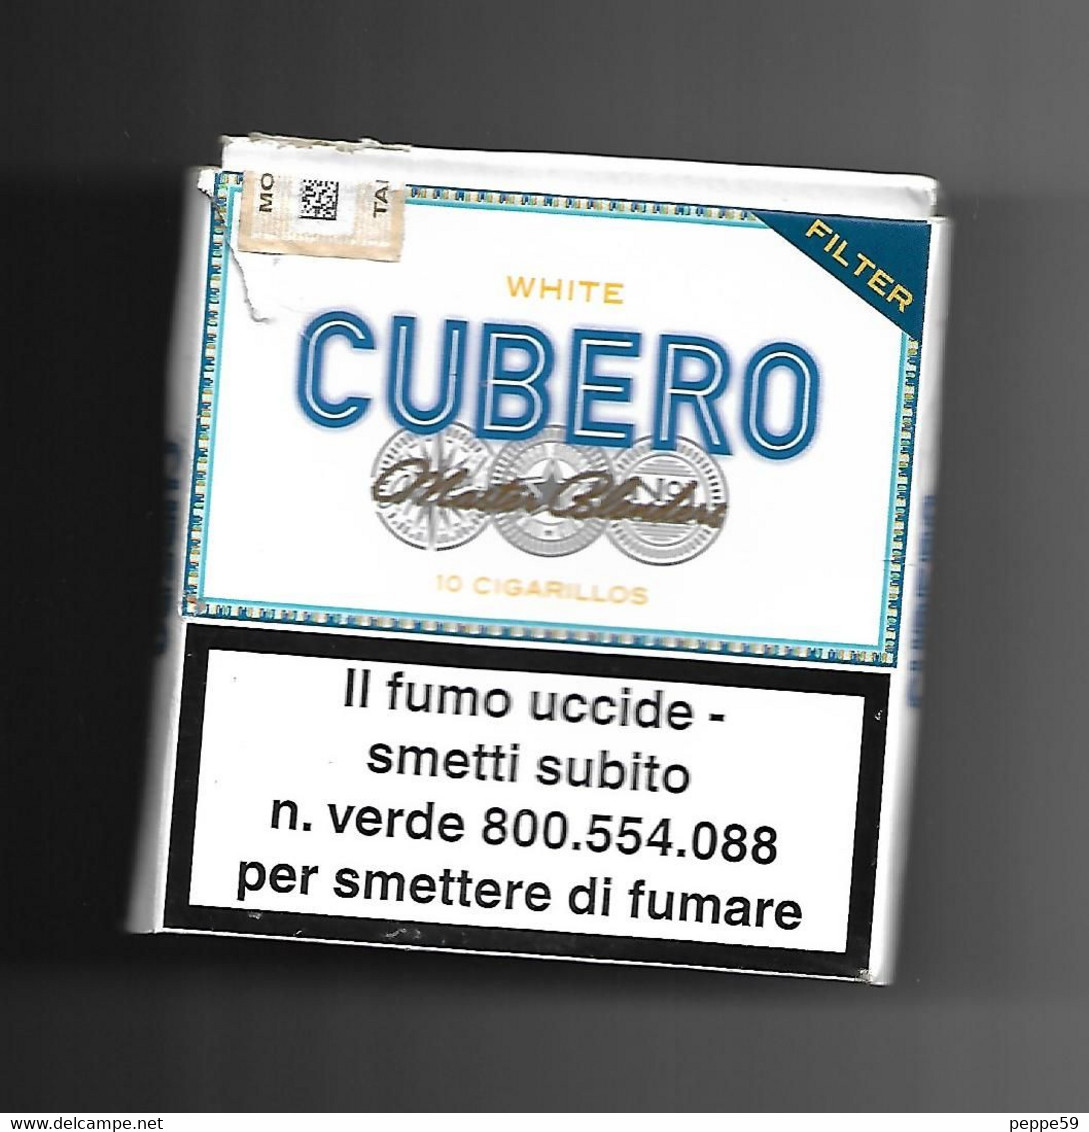 Tabacco Pacchetto Di Sigari Italia - 10 Cubero N.01 - (vuoto)  Tobacco-Tabac-Tabak-Tabaco - Empty Cigar Cabinet